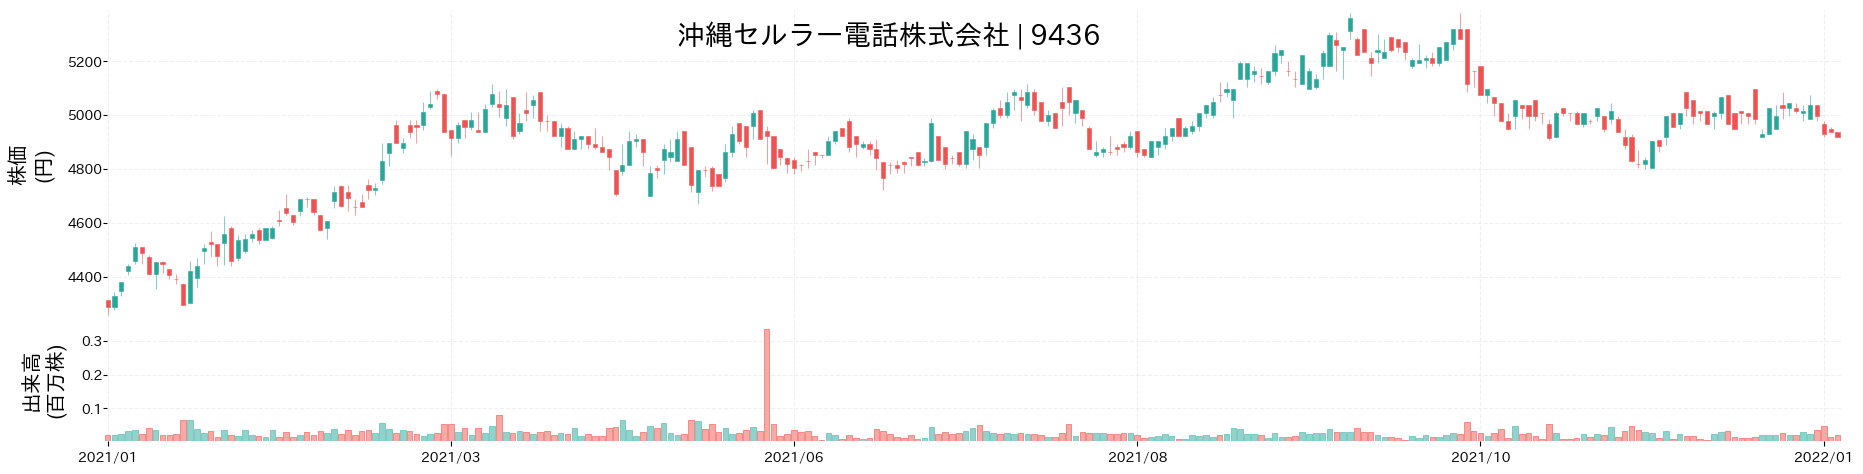 沖縄セルラー電話の株価推移(2021)